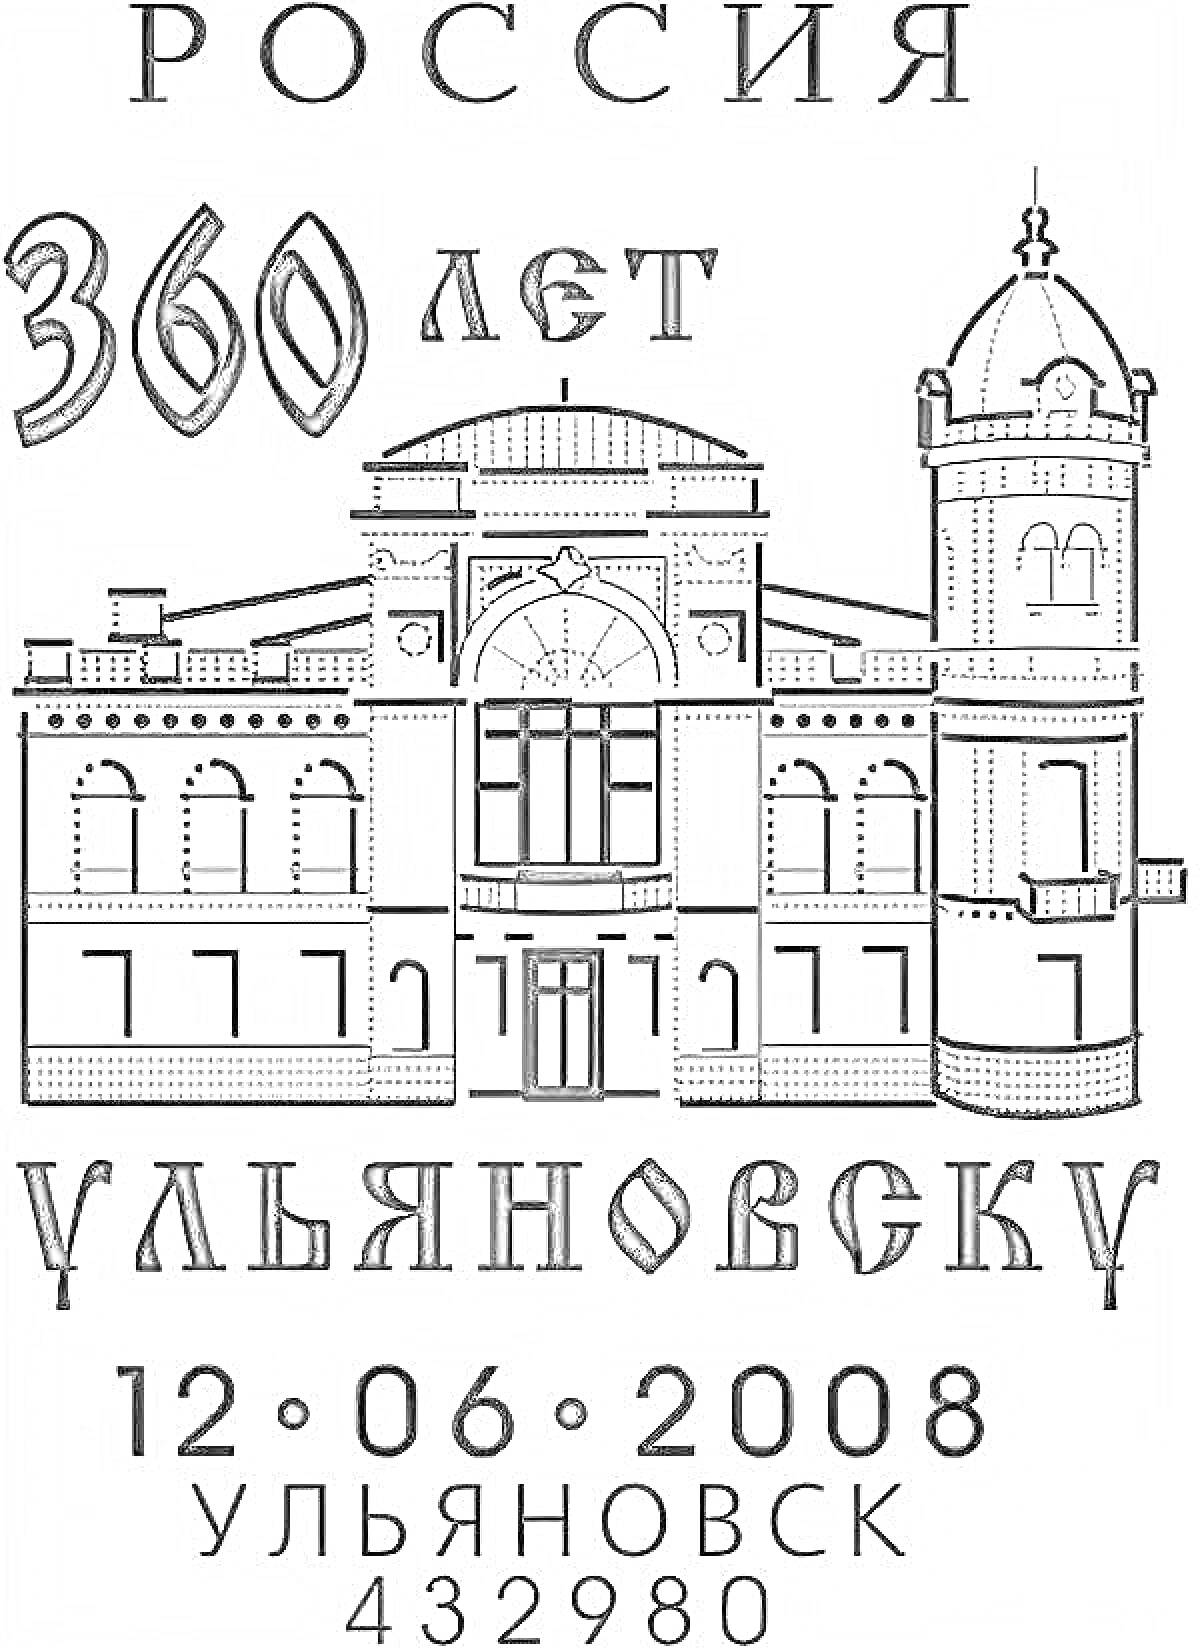 Раскраска Россия 360 лет, Ульяновск. На рисунке изображено здание с куполом и башней; над ним текст 